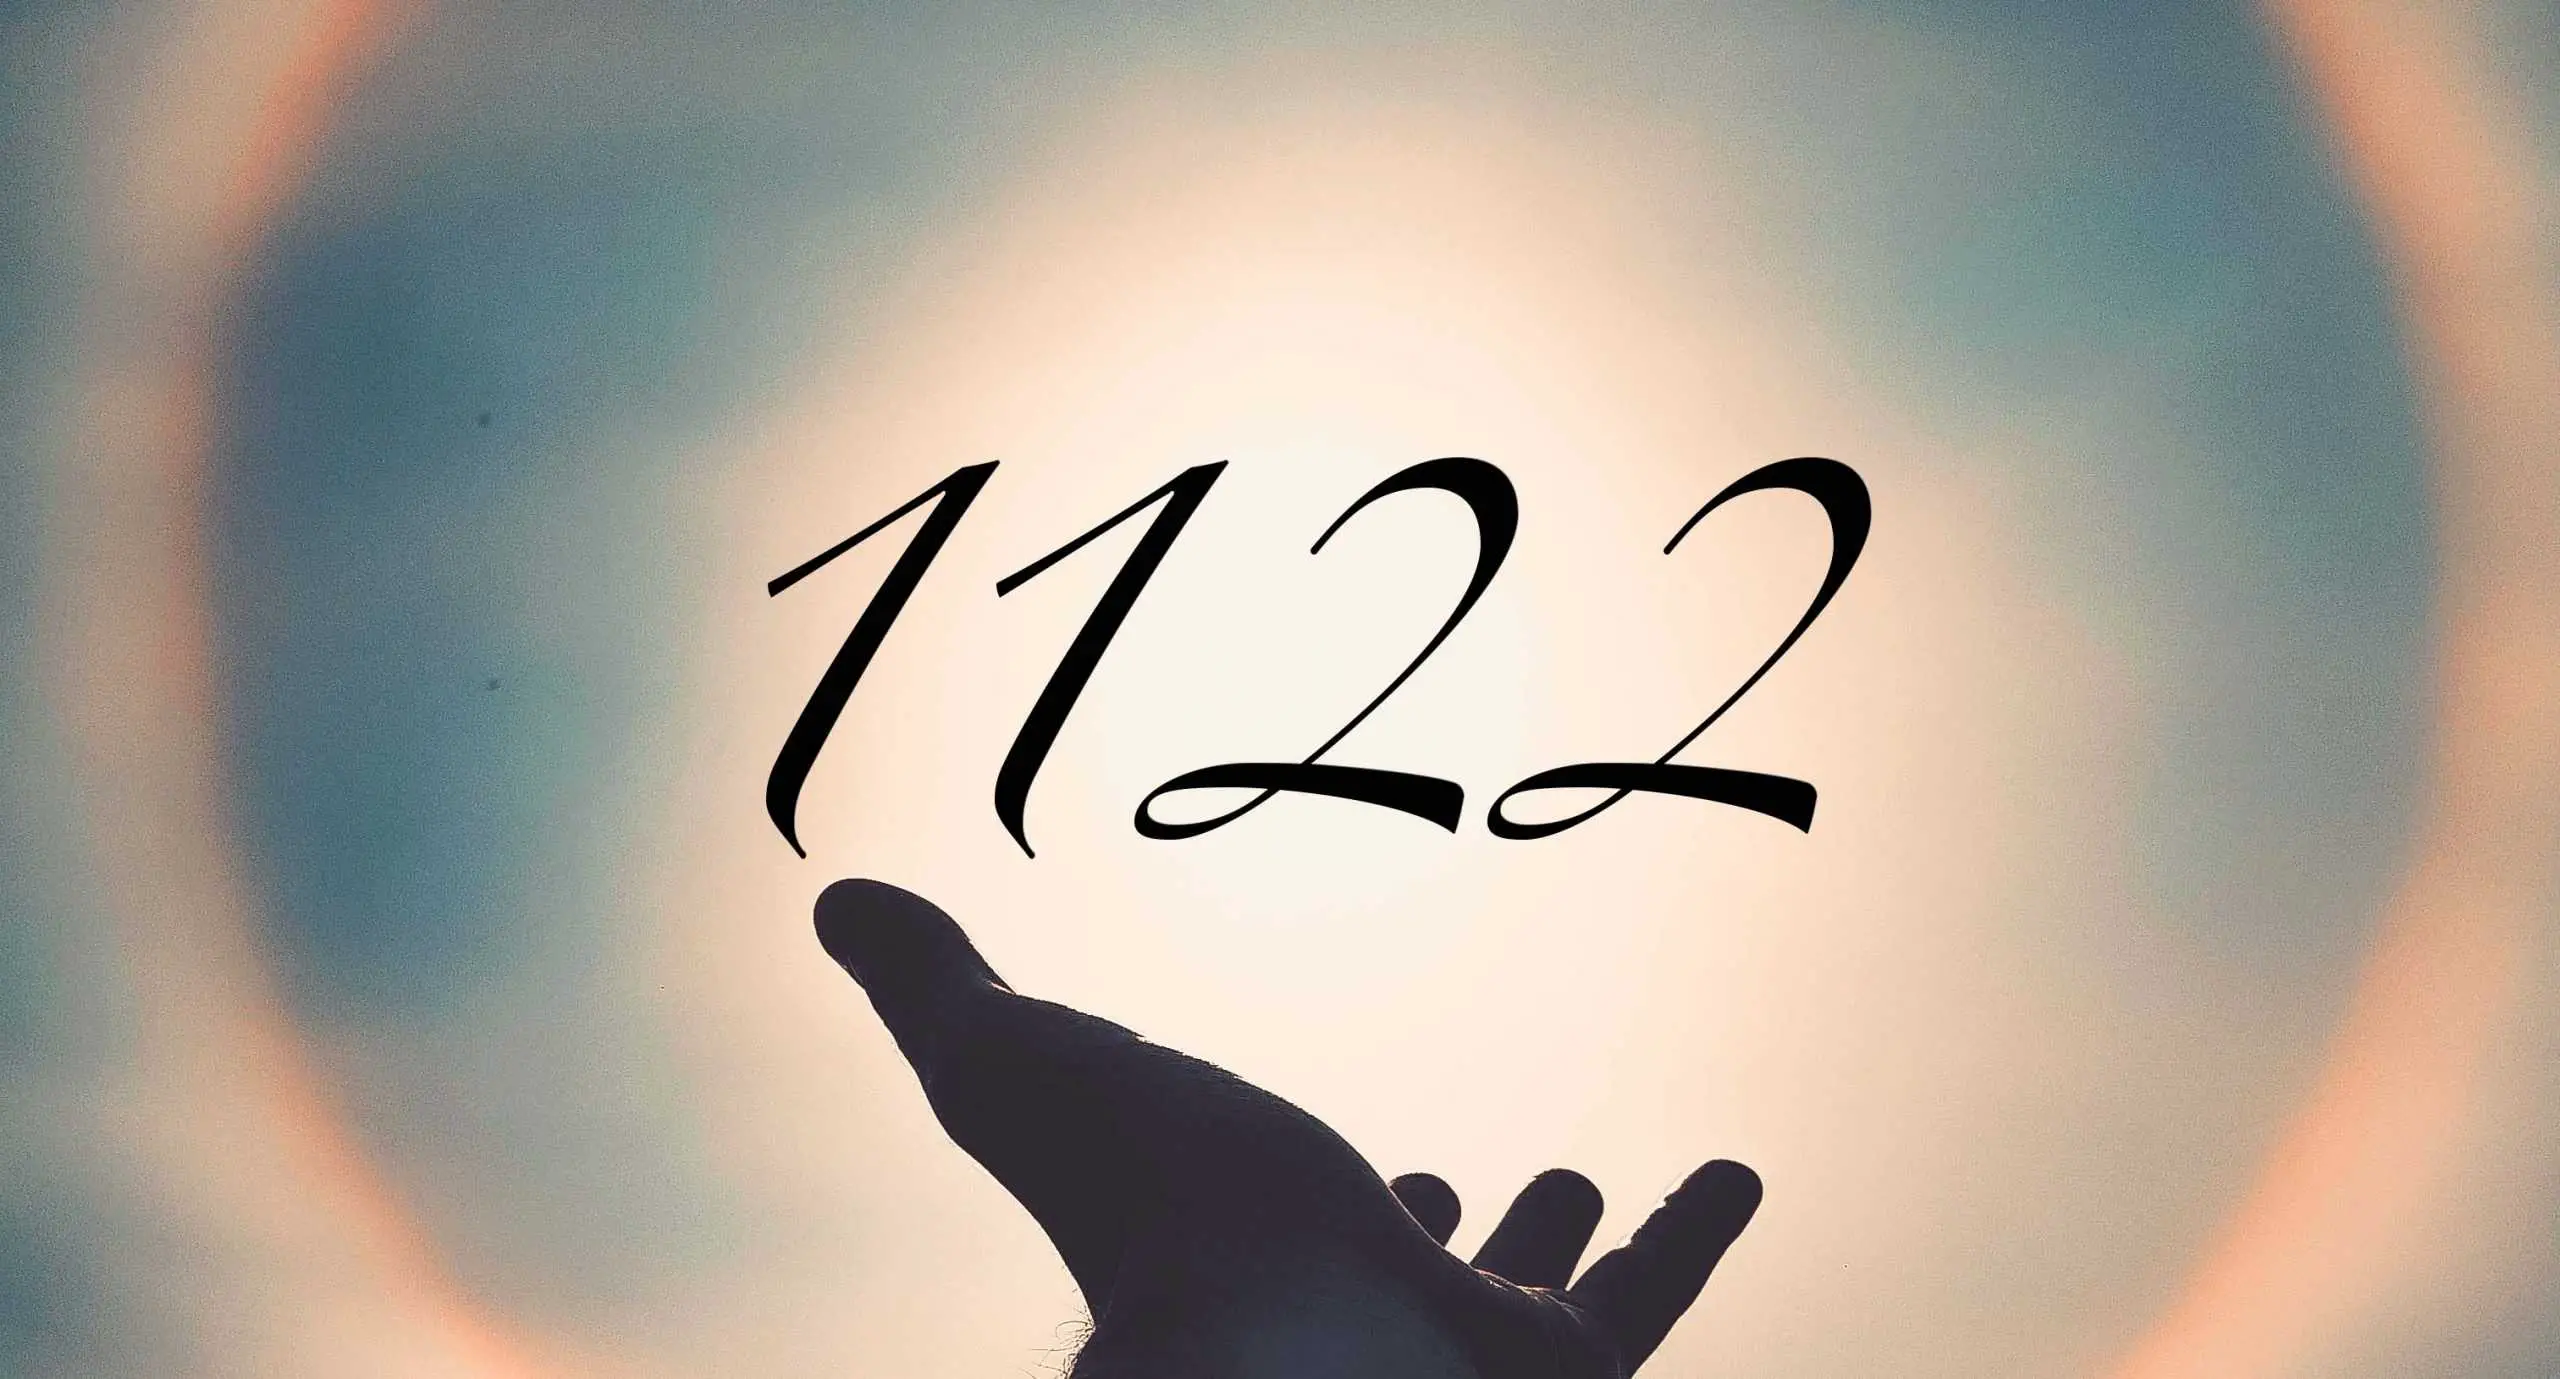 Signification du nombre 1122